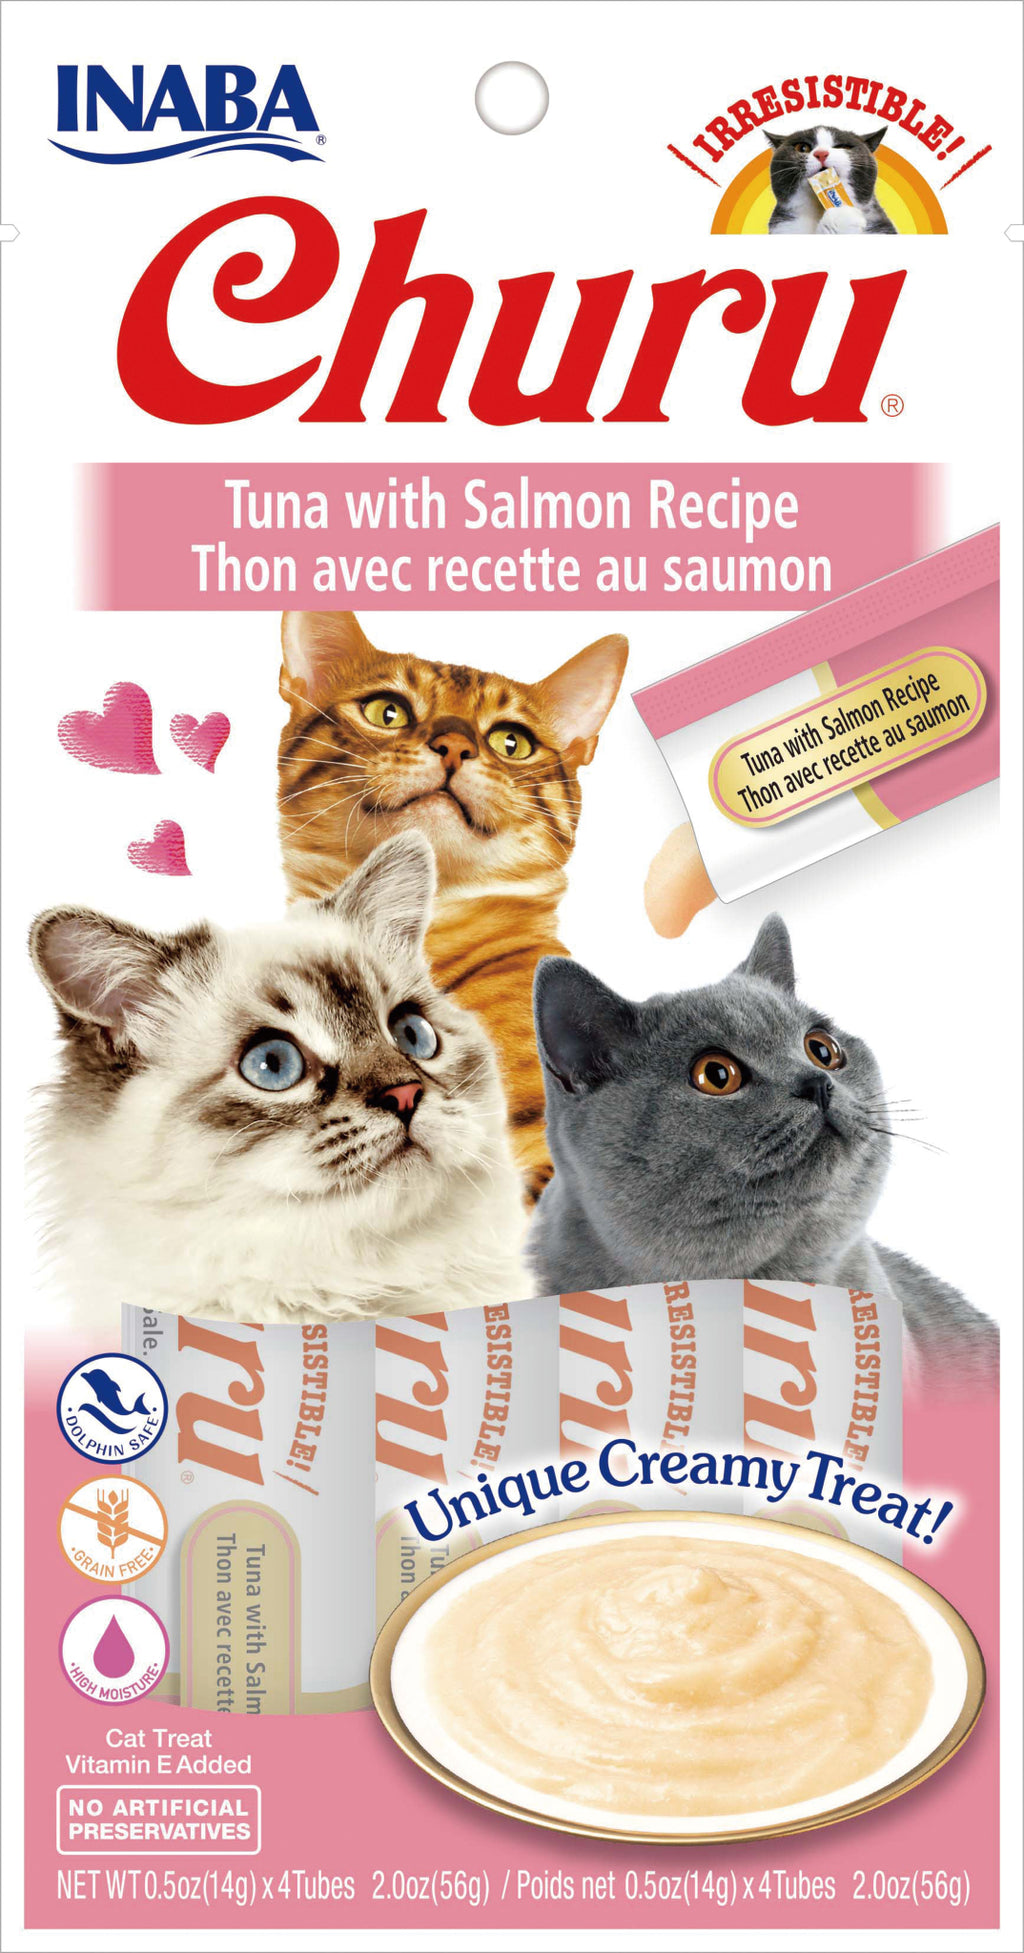 INABA Churu Tuna with Salmon